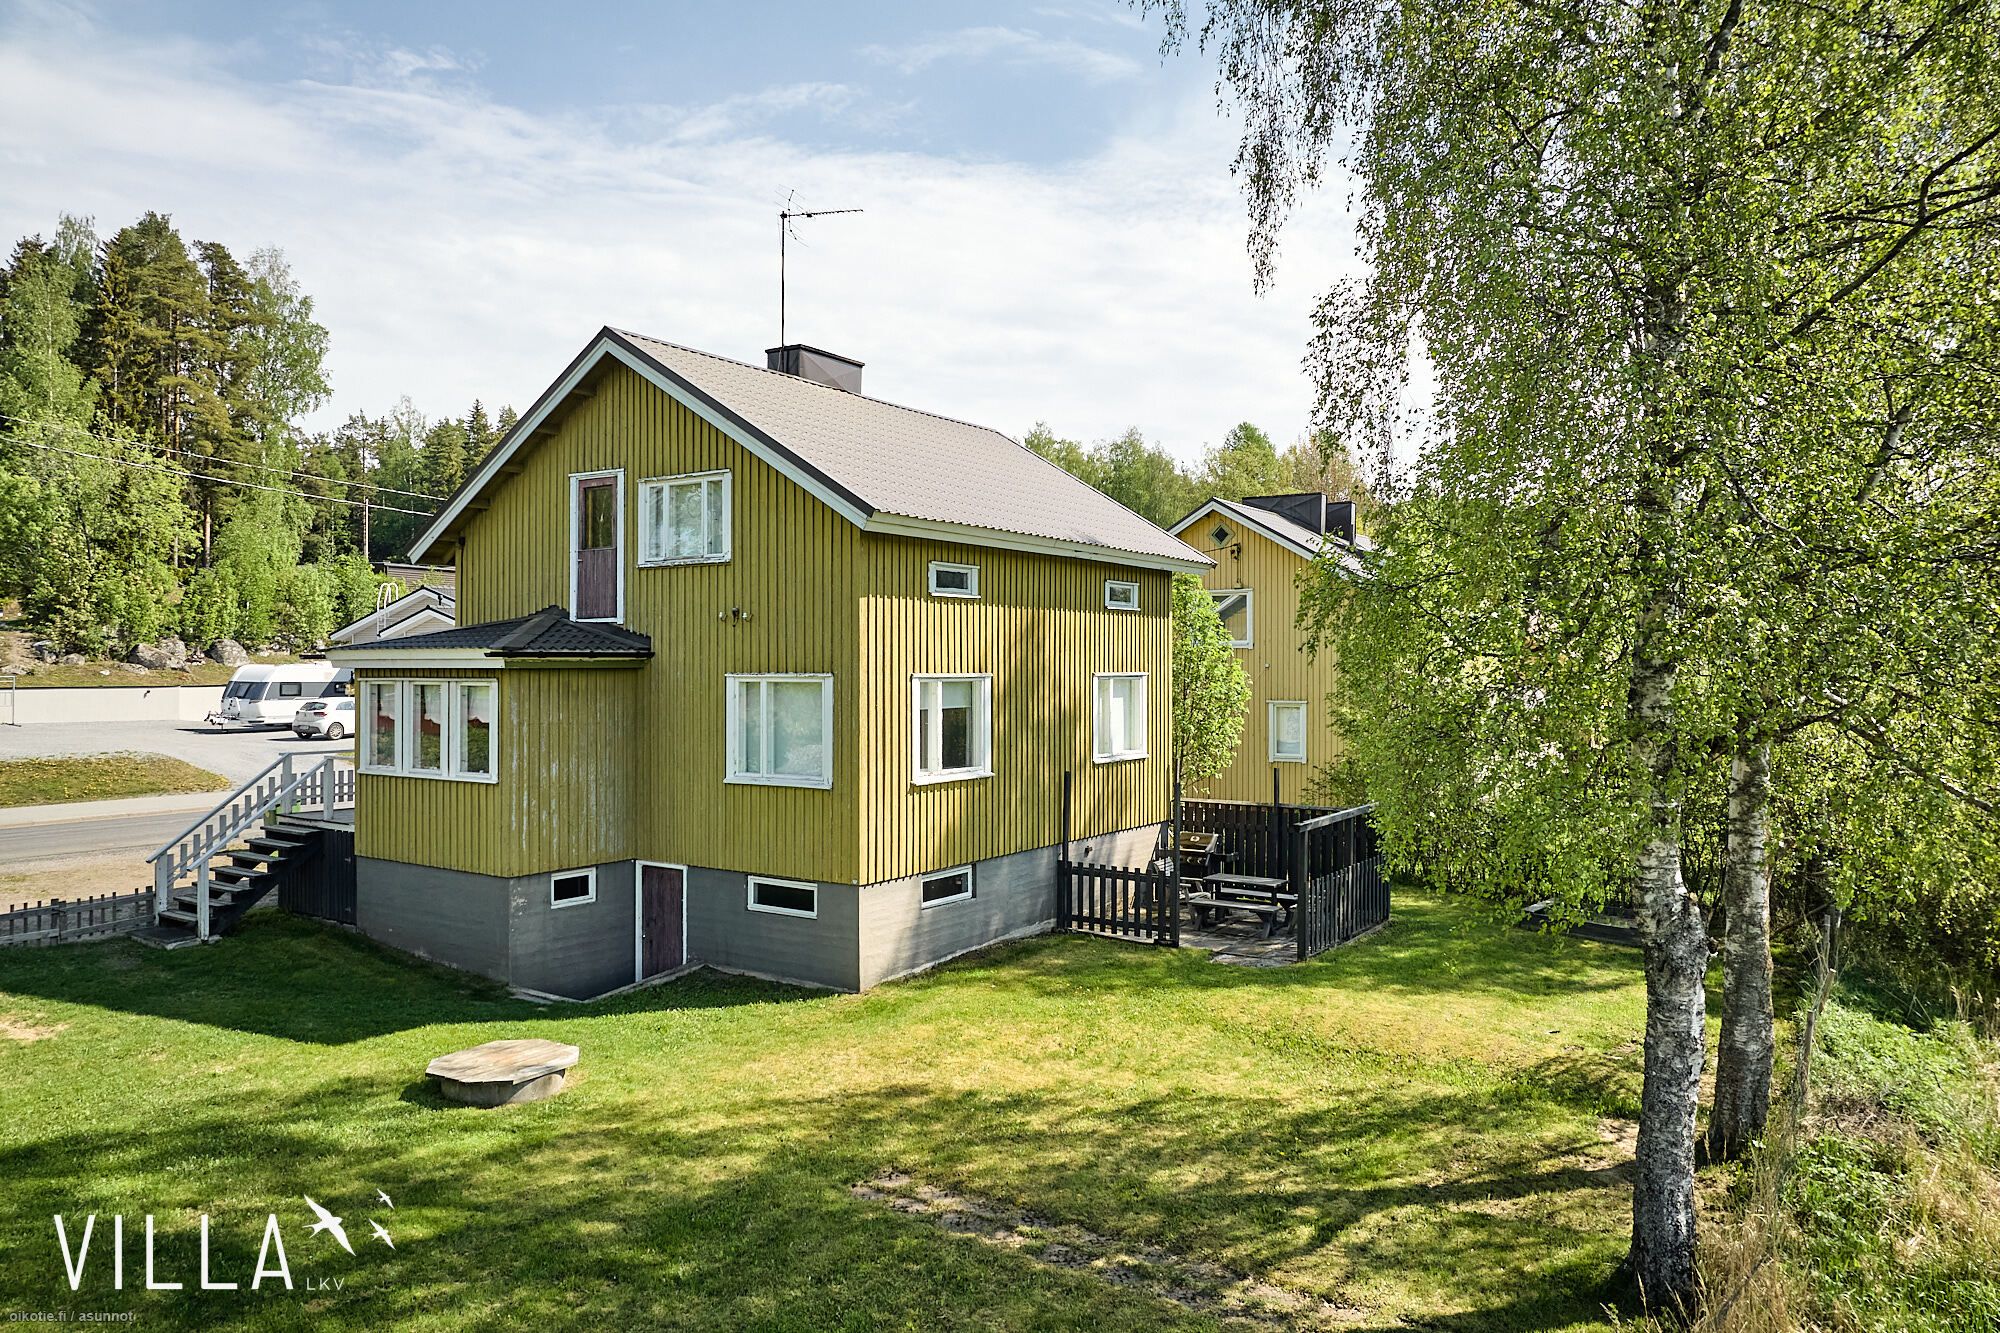 110 m² Käyräkuja 6, 33430 Ylöjärvi 4h+k+s+at – Oikotie 17233359 – SKVL